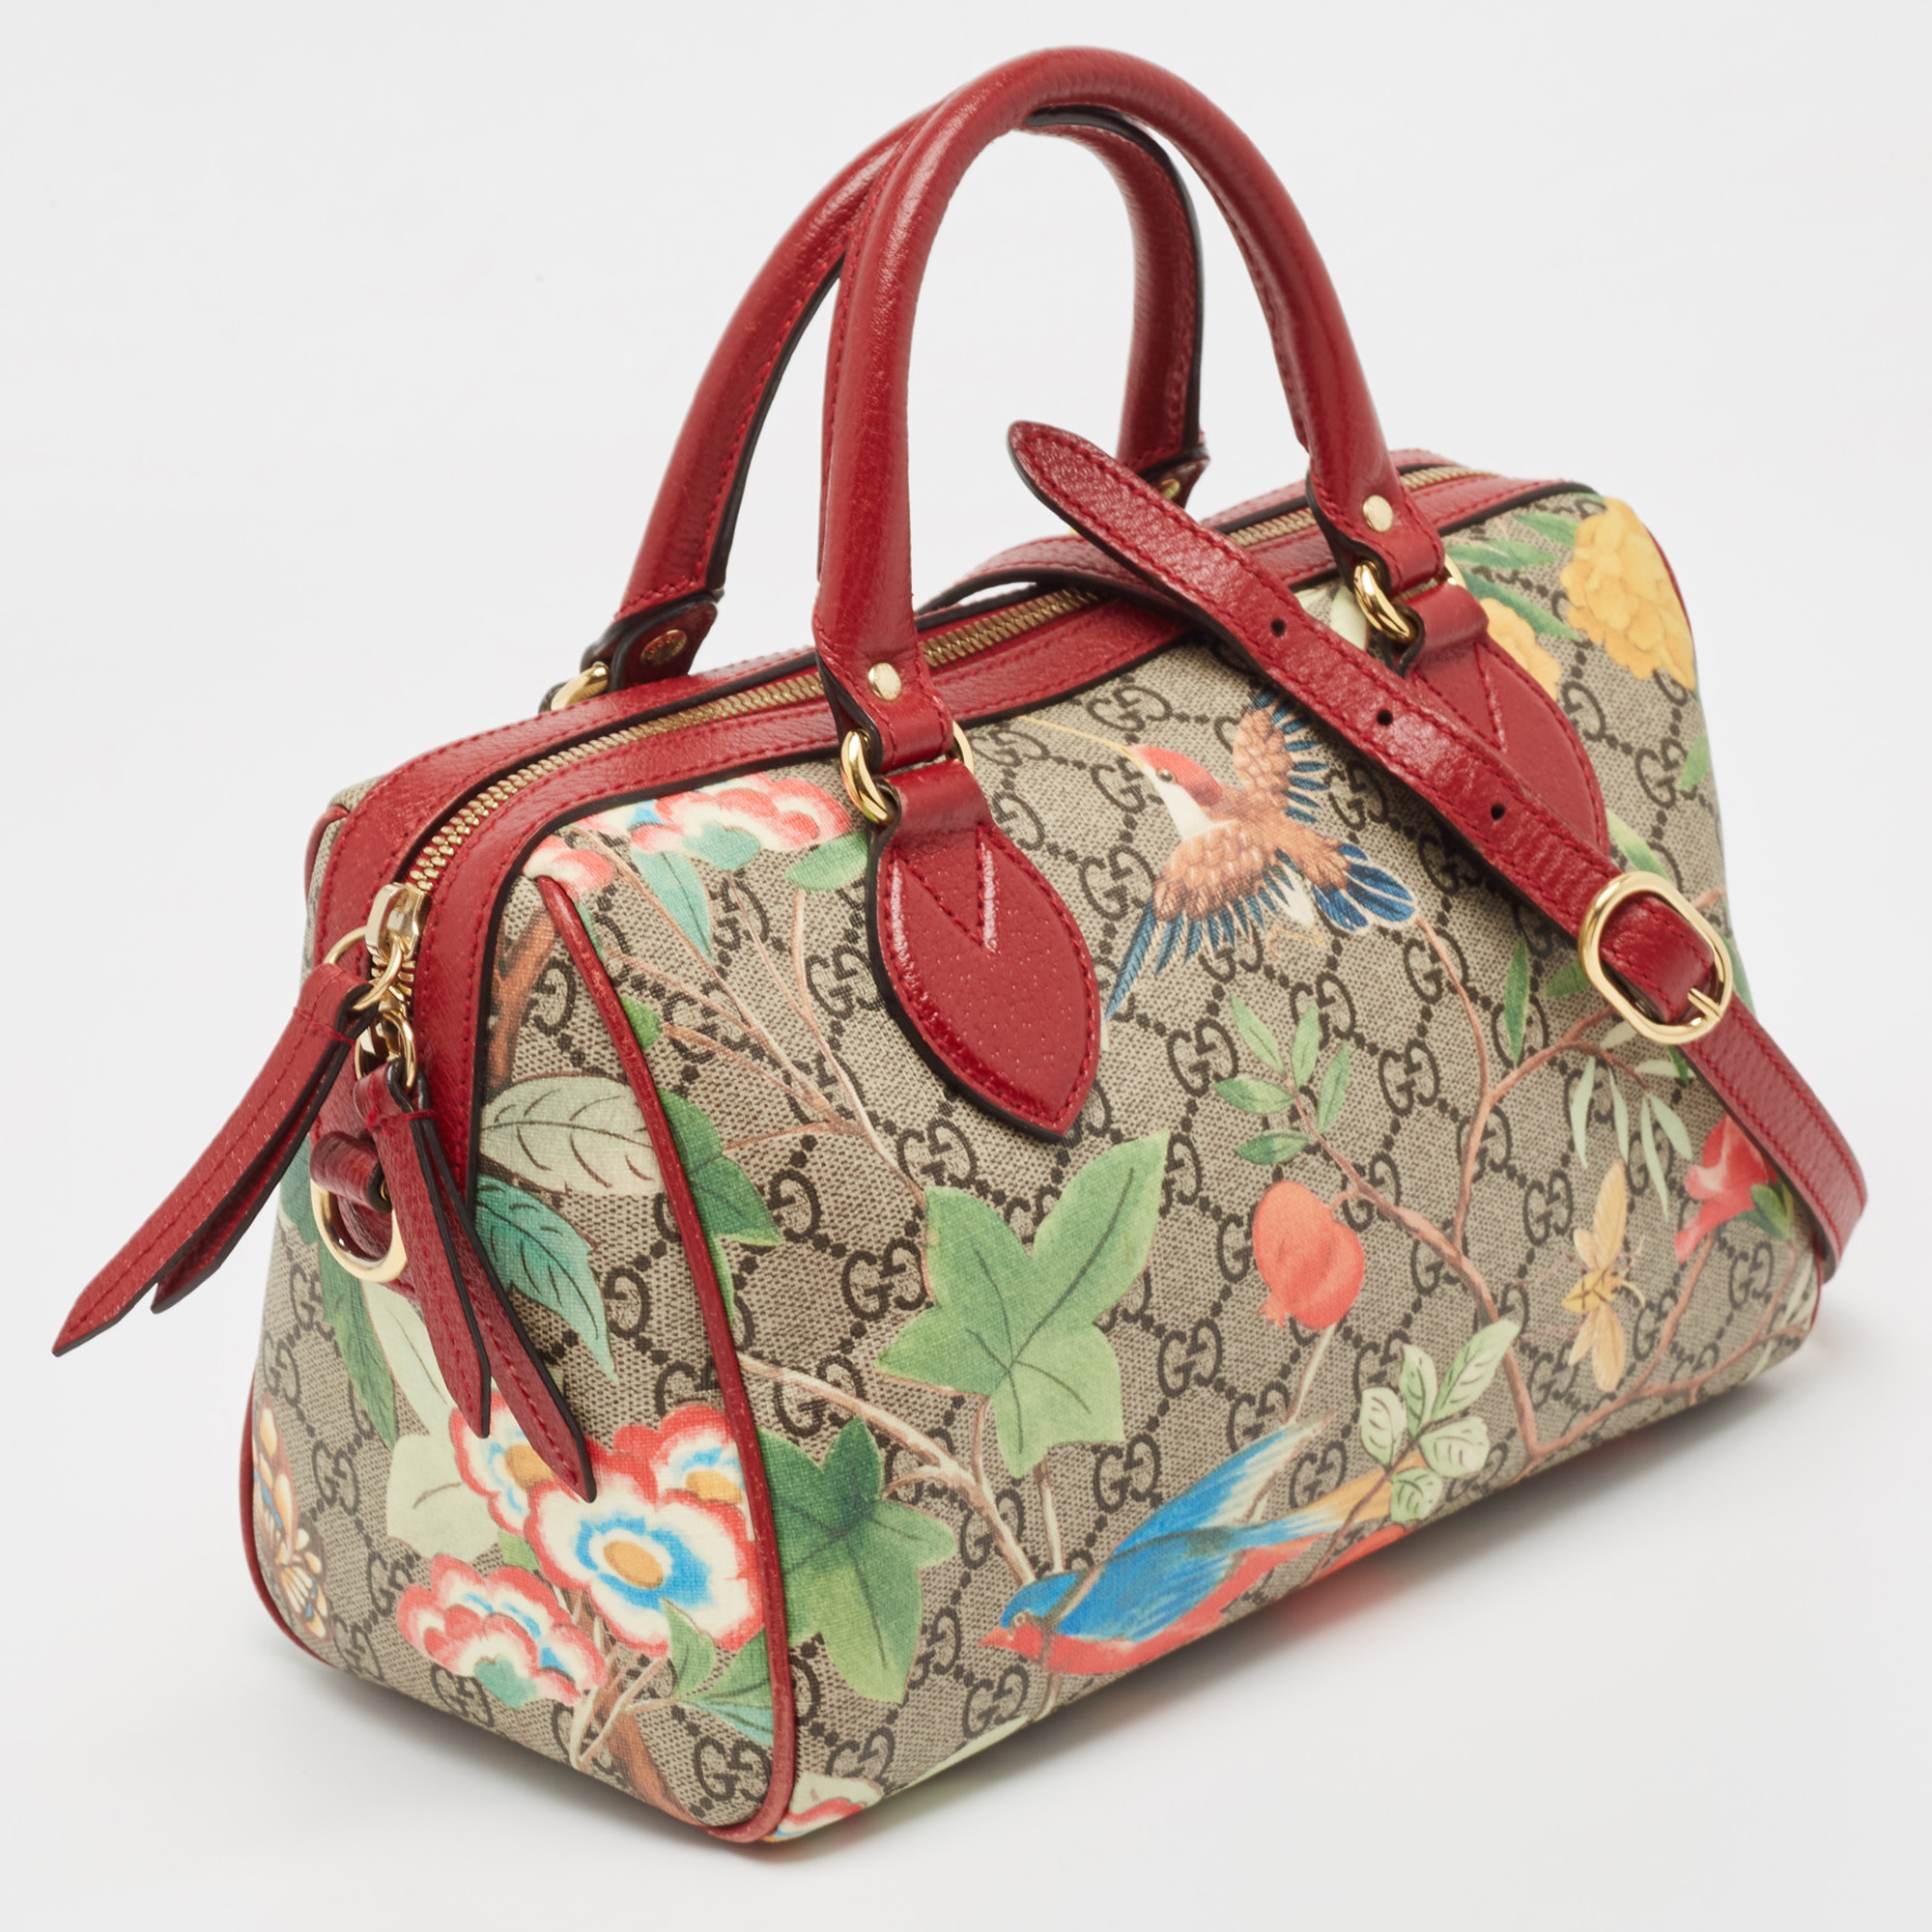 Gucci Multicolor GG Supreme Canvas And Leather Small Tian Boston Bag